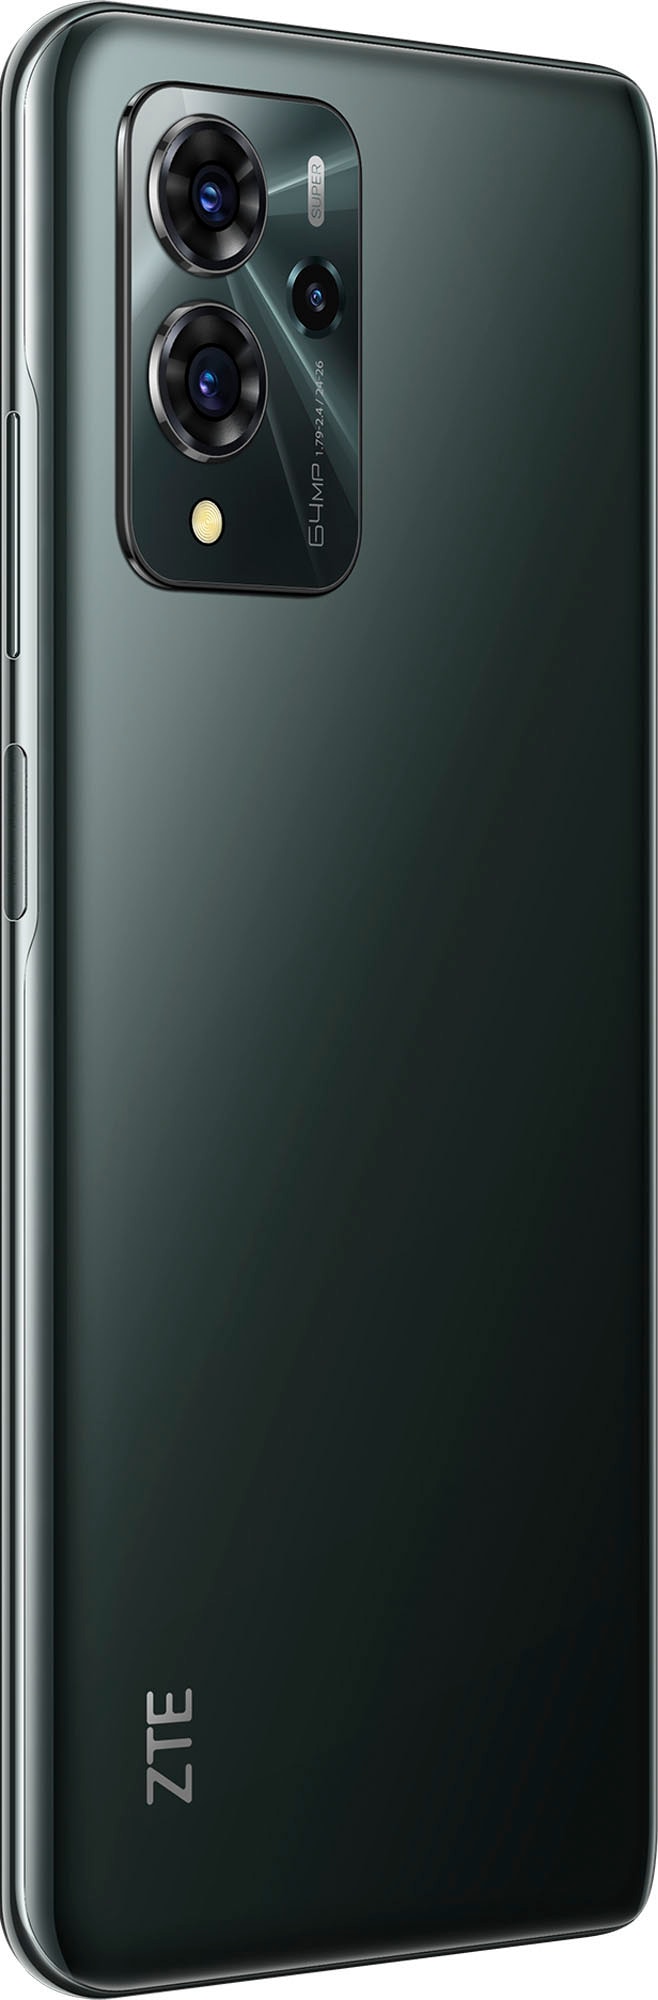 ZTE Smartphone »Blade V40 pro«, Dark Green, 16,94 cm/6,67 Zoll, 128 GB  Speicherplatz, 64 MP Kamera jetzt bestellen bei OTTO